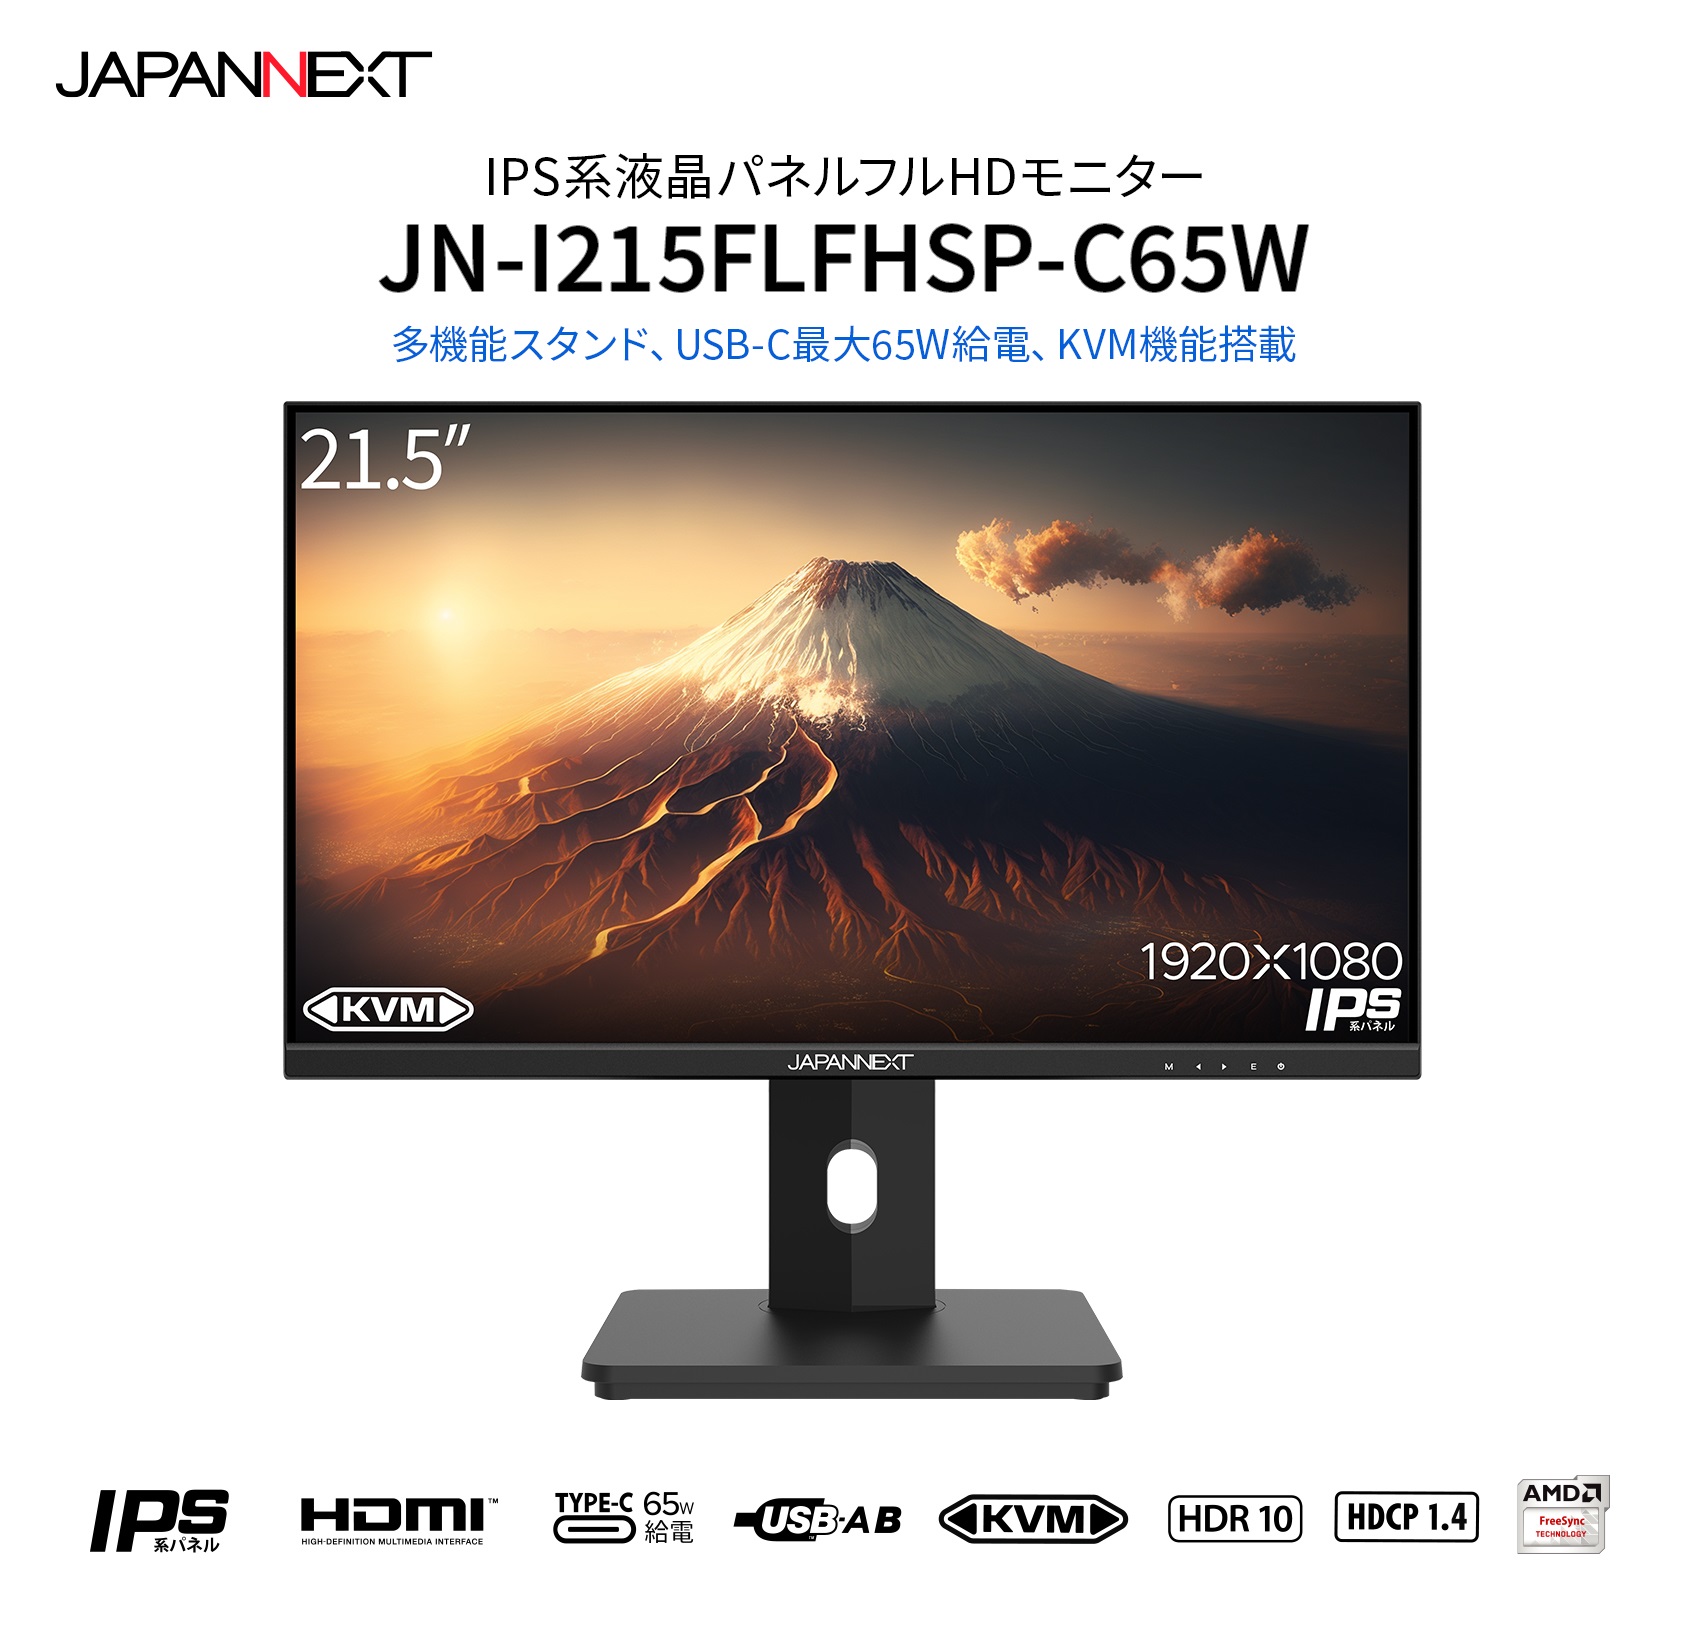 JAPANNEXT JN-I215FLFHSP-C65W 21.5インチ IPS フルHD(1920 x 1080) 液晶モニター 昇降式スタンド採用  USB-C(最大65W給電)対応 HDMI KVM機能 ジャパンネクスト :4589511171219:JAPANNEXTオンラインストア 通販  